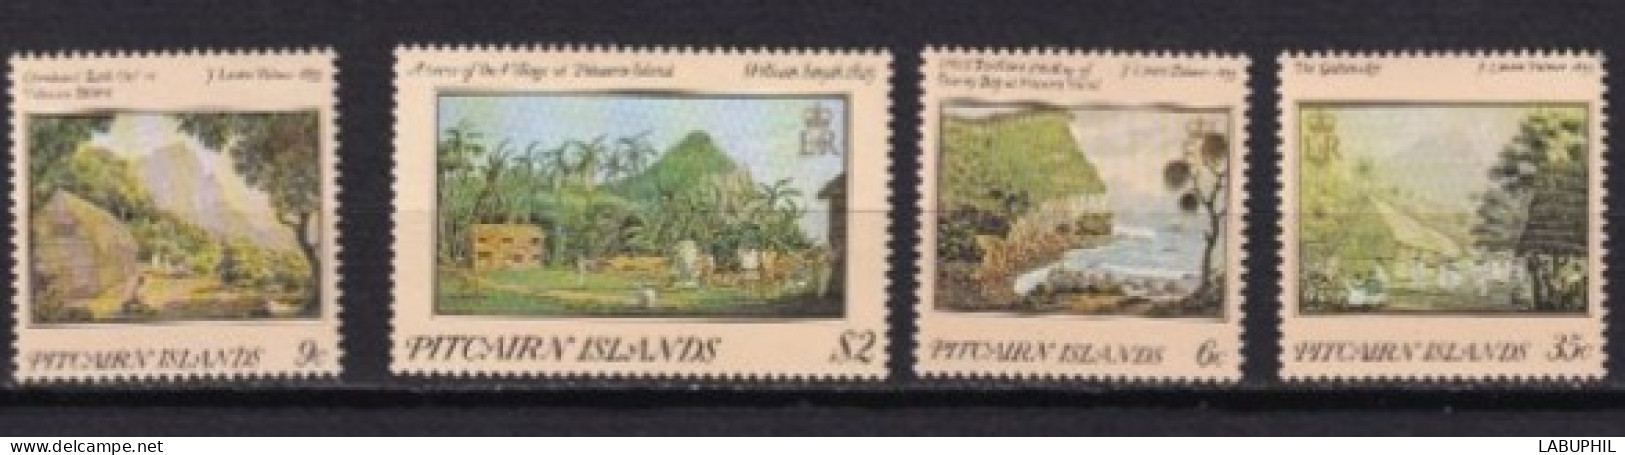 PITCAIRN  MNH  ** 1985 - Pitcairn Islands